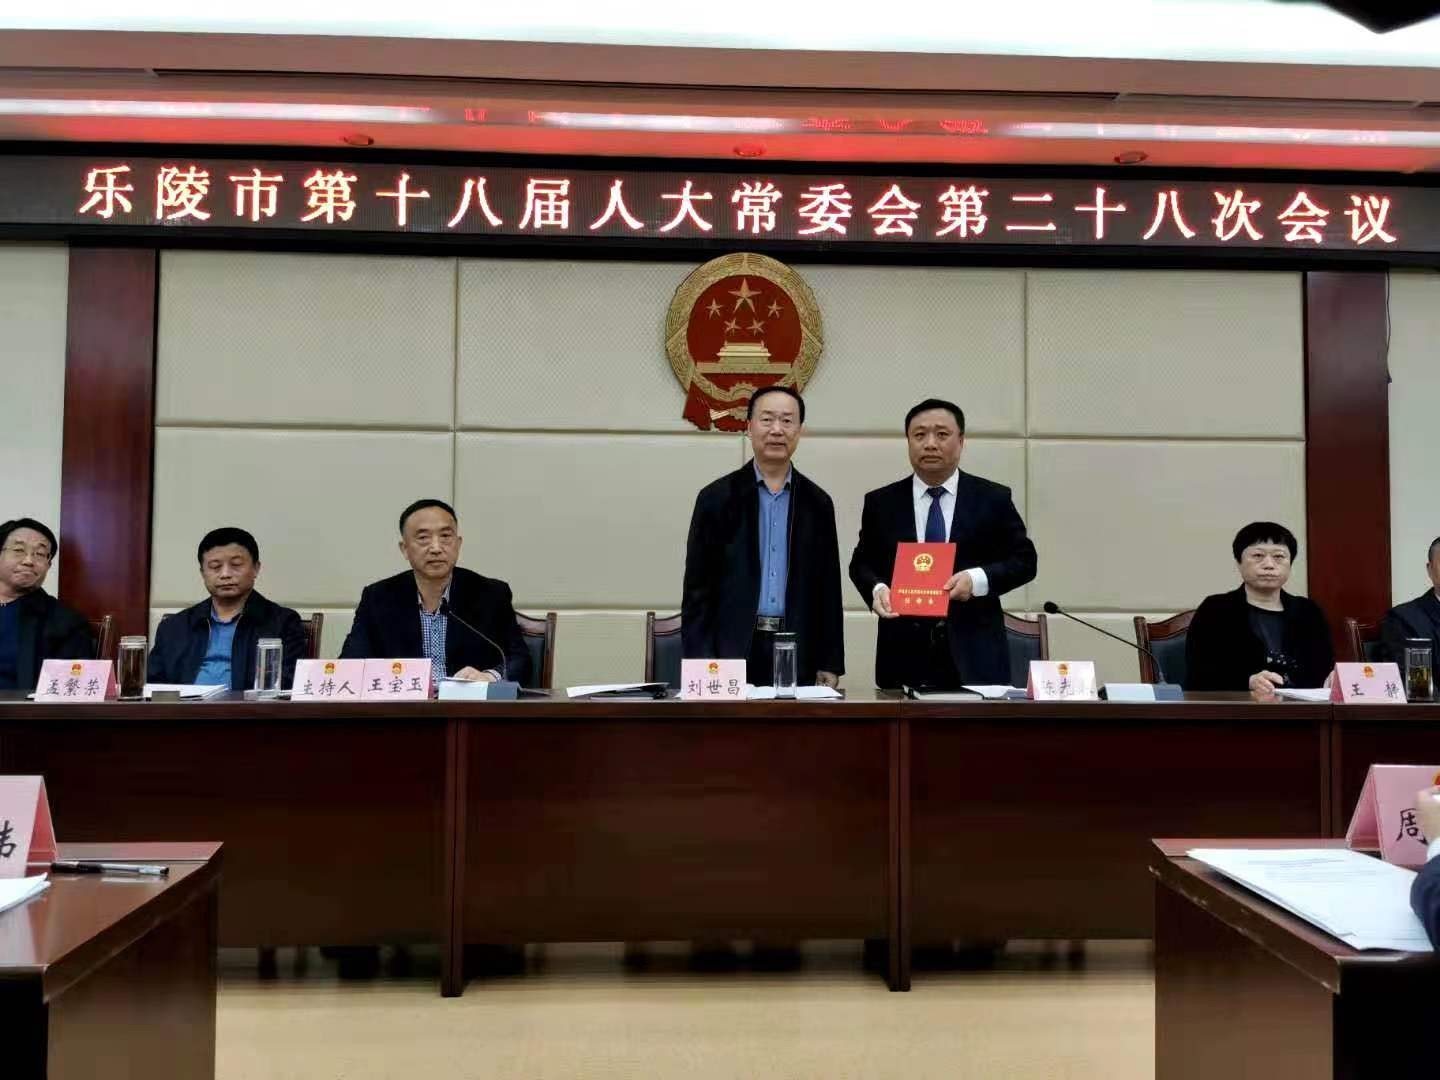 乐陵市第十八届人大常委会第二十八次会议召开 任命陈光春为代市长